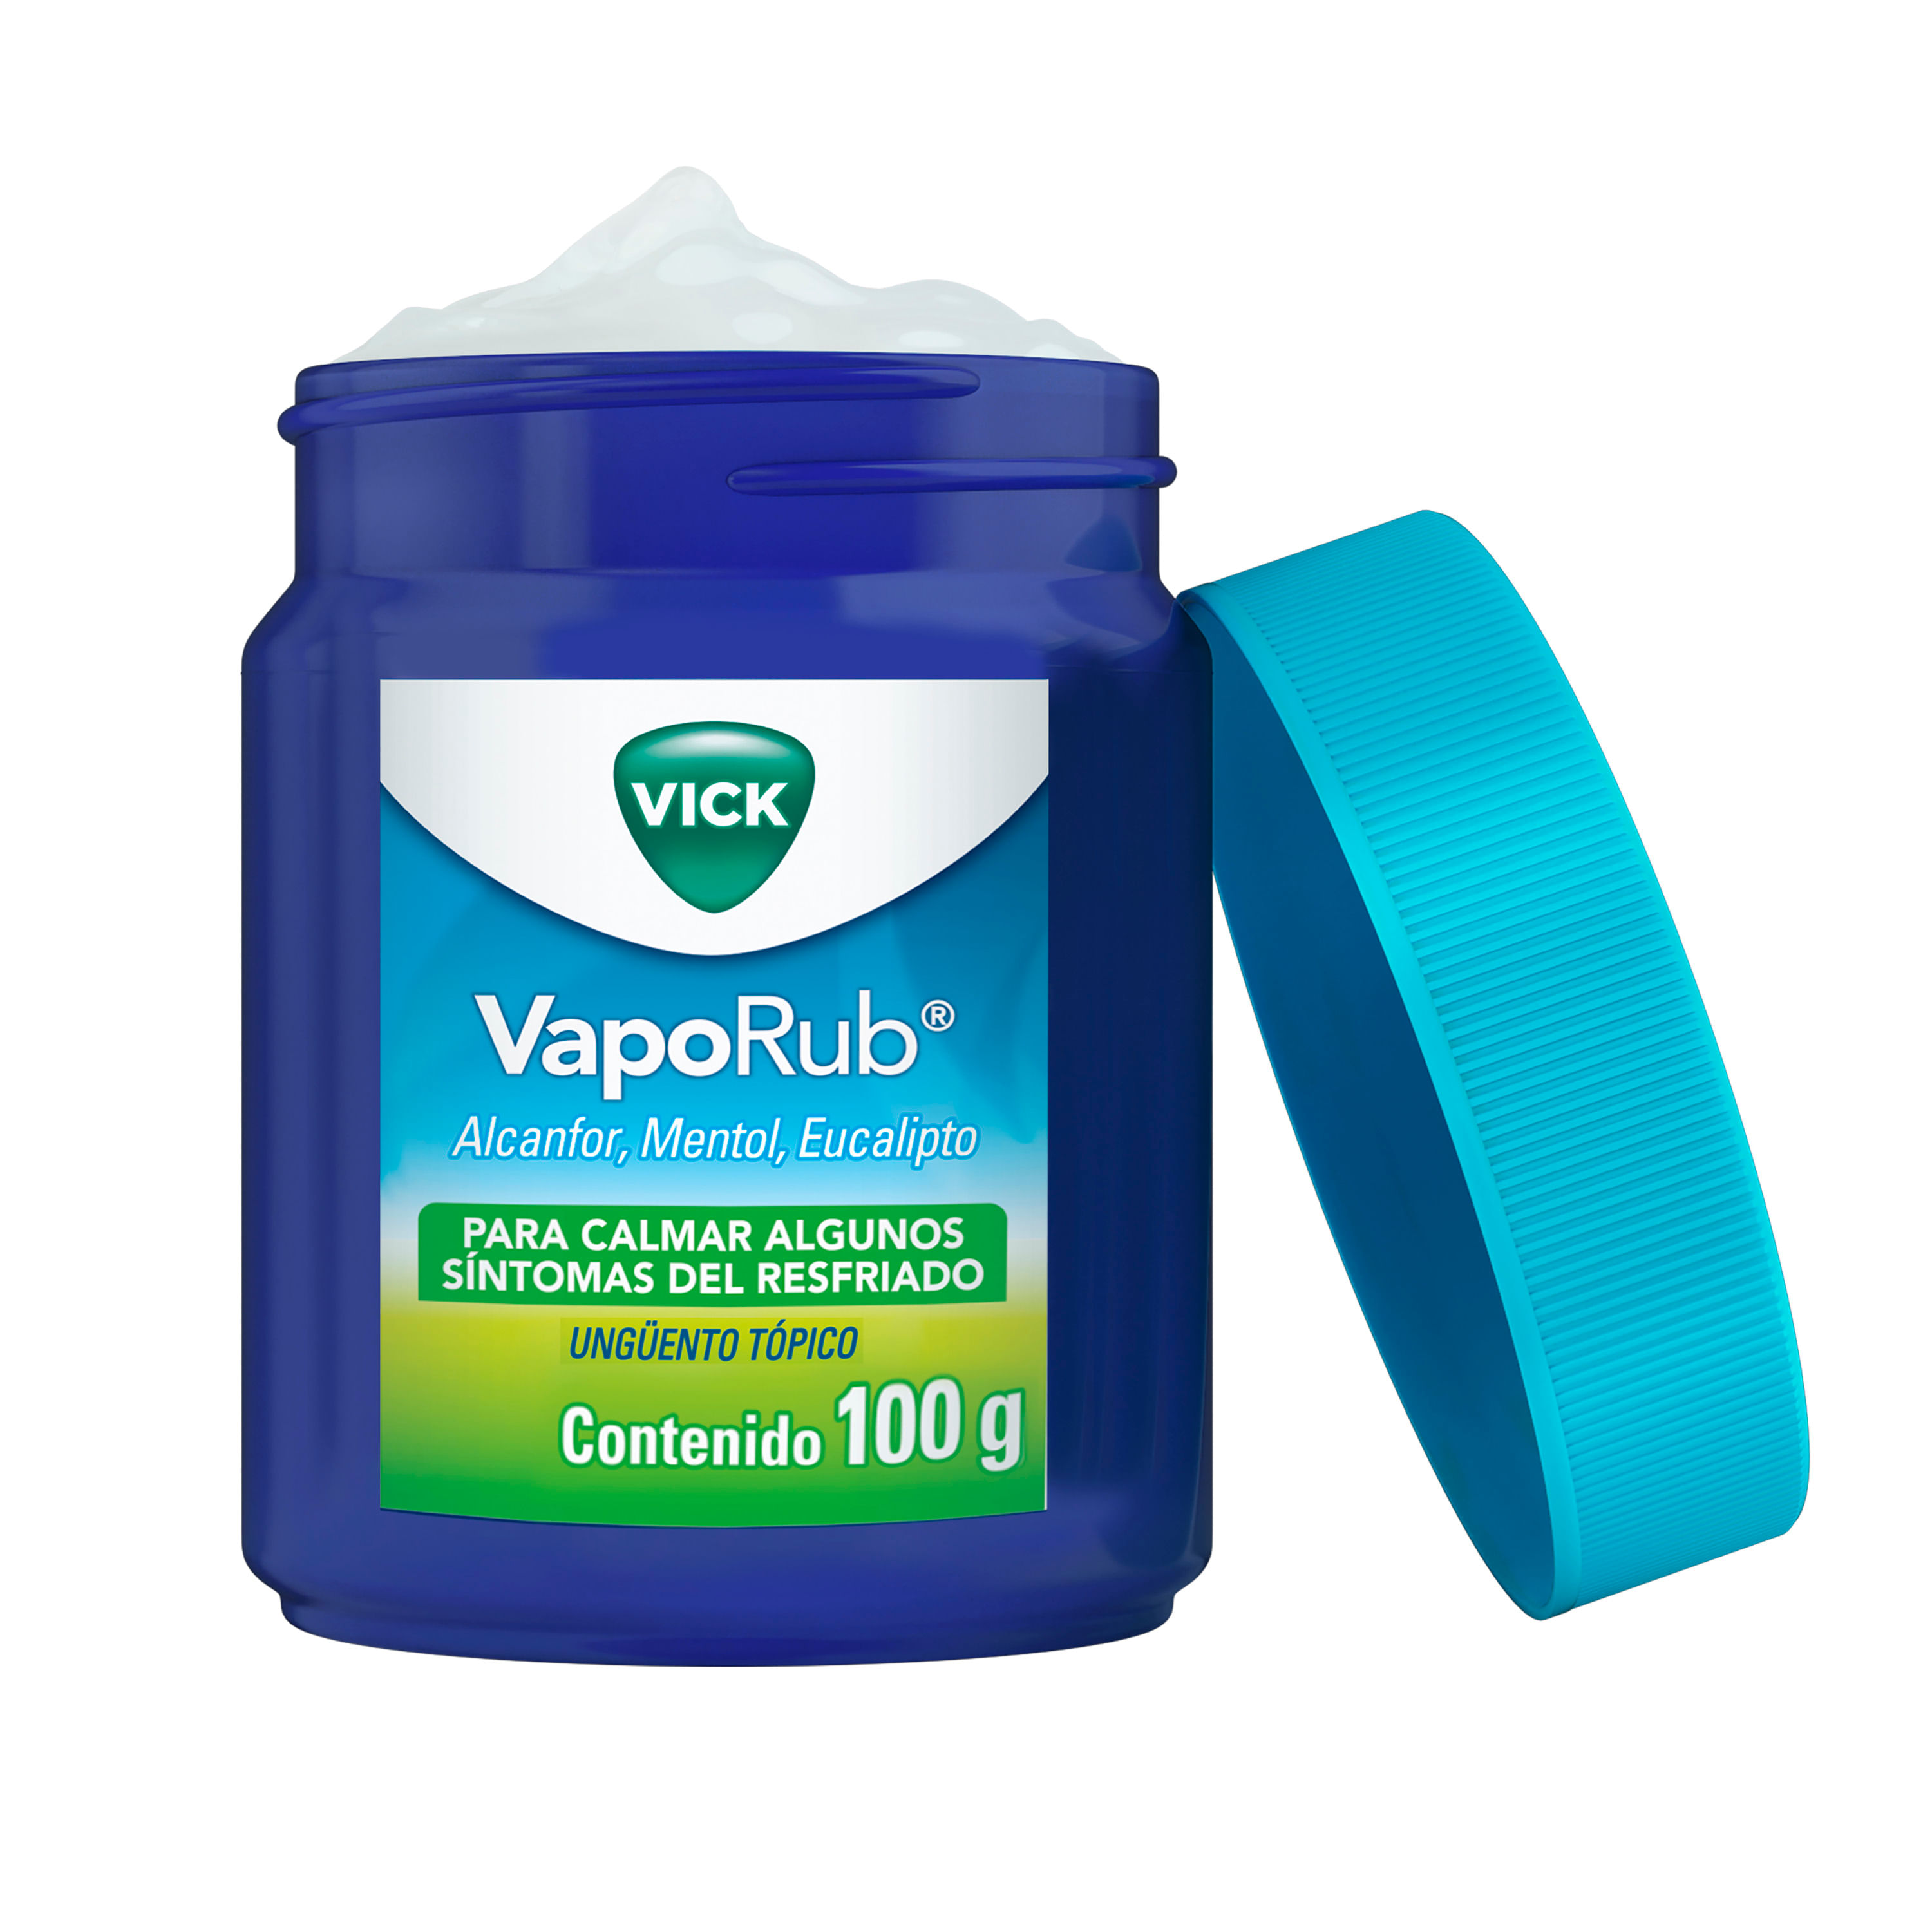 Comprar Ungüento Vick VapoRub para calmar algunos síntomas del resfriado  100 g